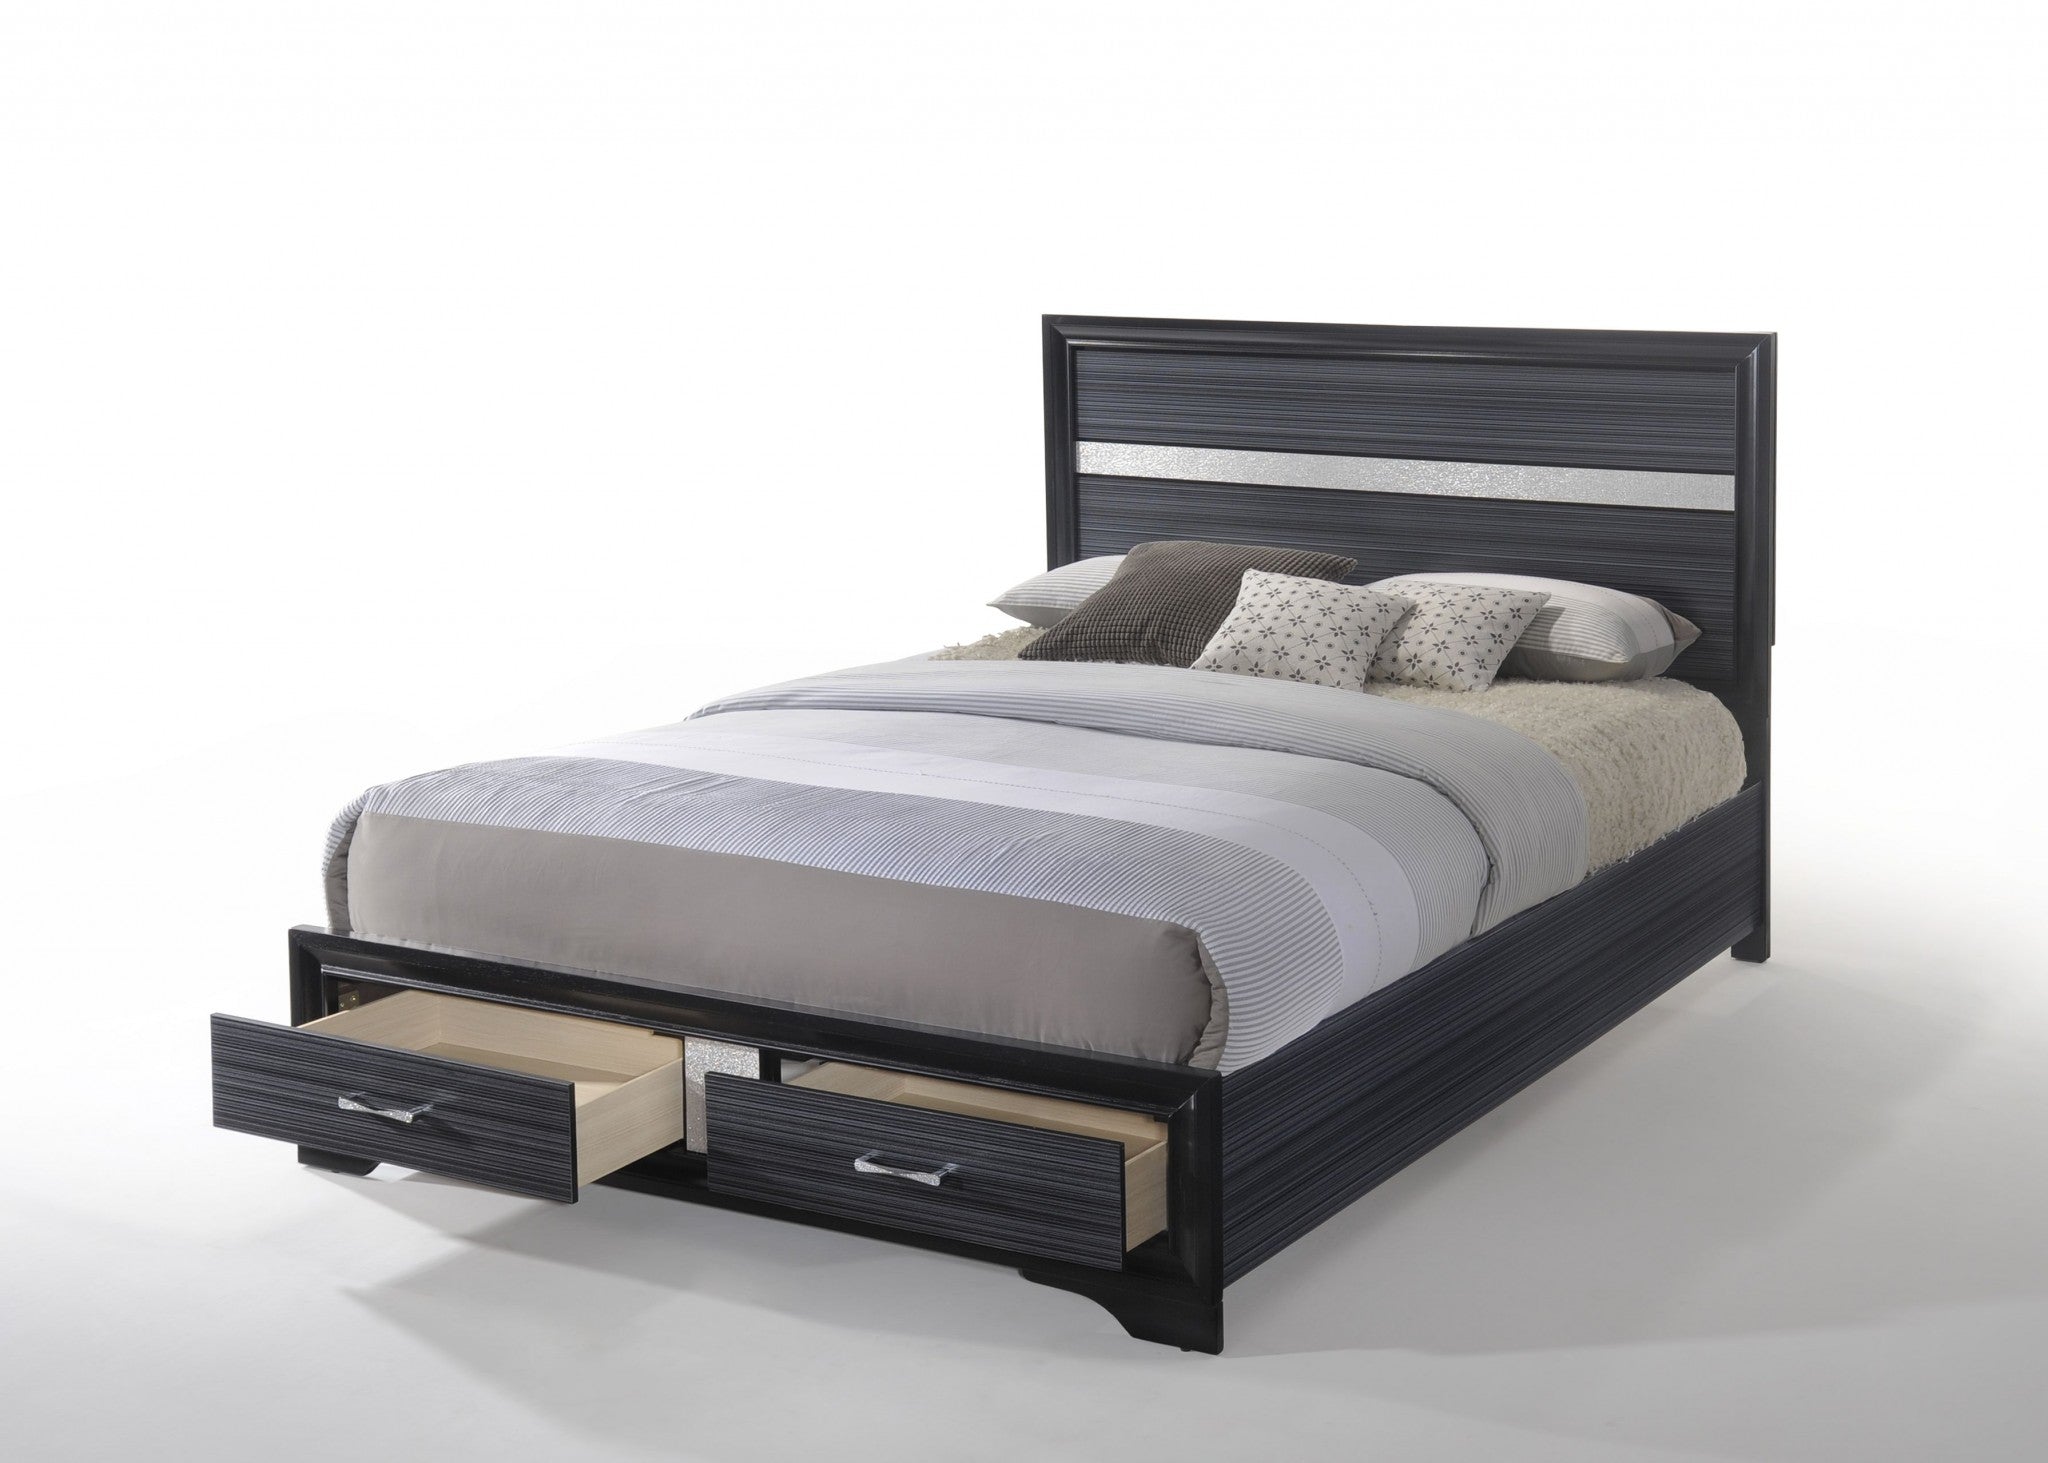 63' X 84' X 50' Black Wood Queen Bed wStorage